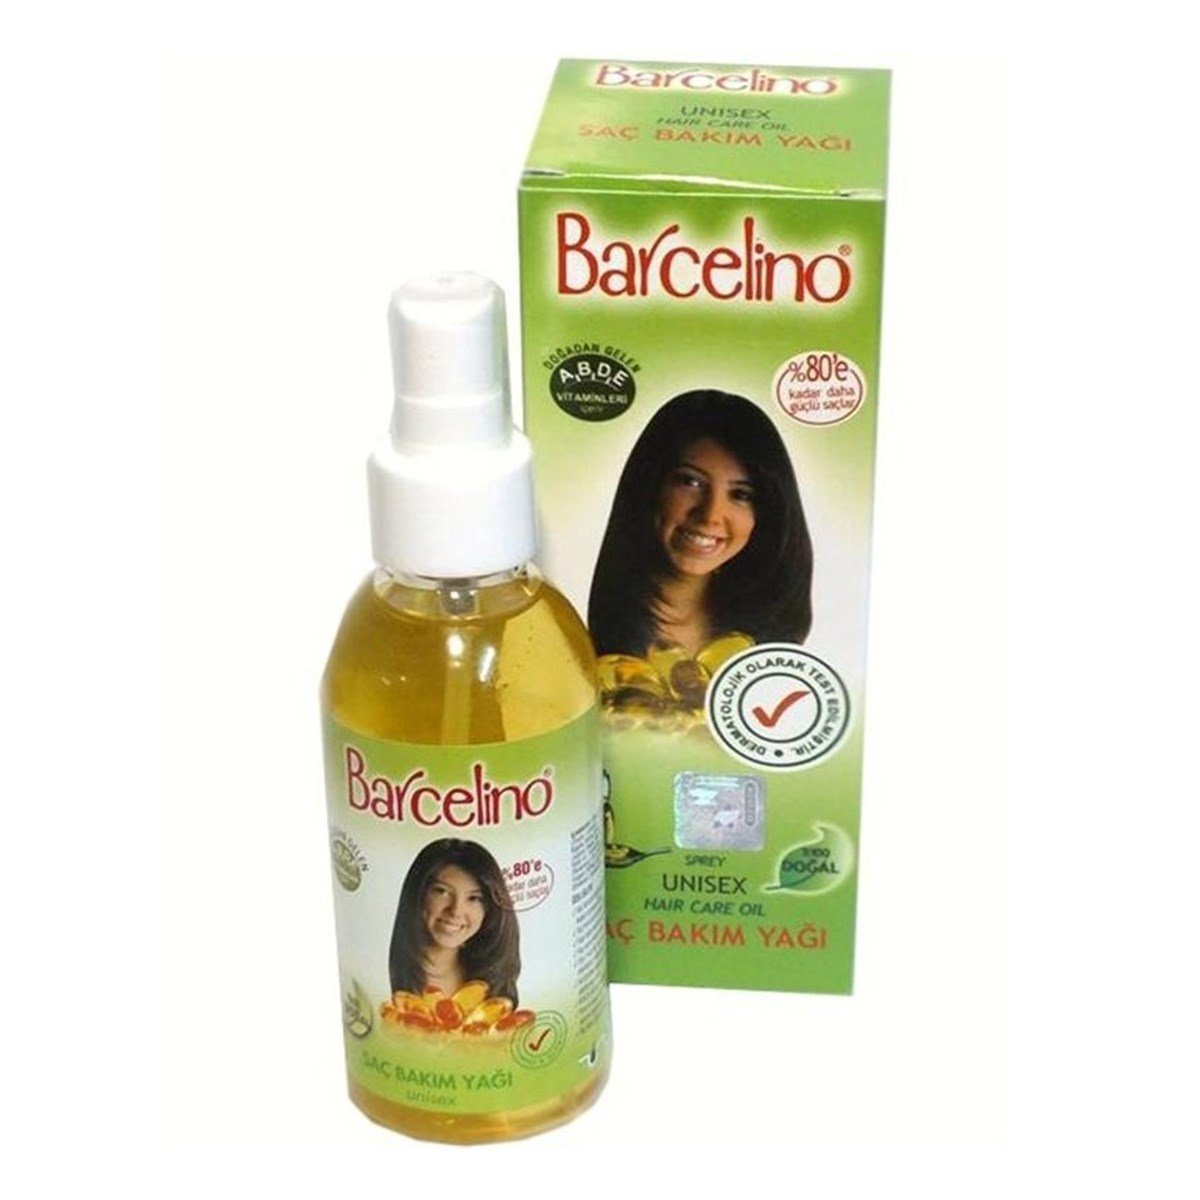 Morfoso Barcelino Unixes Saç Bakım Yağı 150 ml (Hair Care Oil)